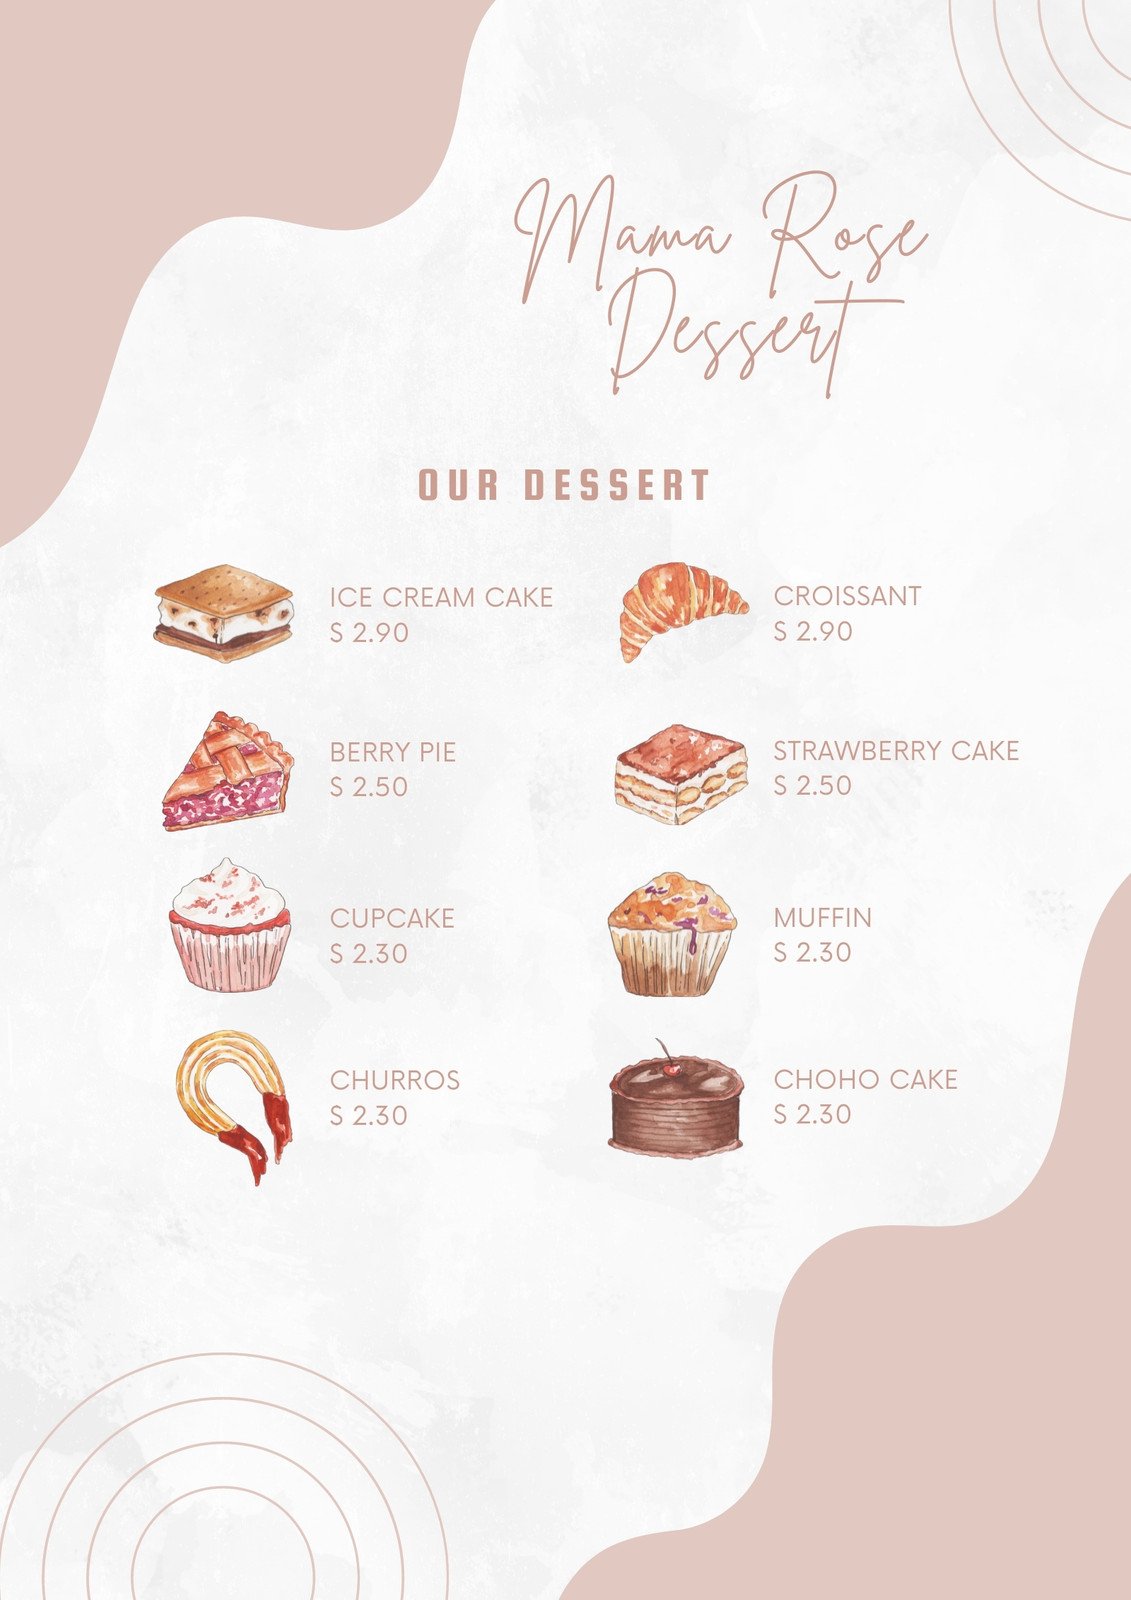 Tráng miệng ngọt ngào là điều mà ai cũng mong muốn để hoàn thành bữa ăn của mình. Bộ sưu tập hình ảnh dessert menu chúng tôi sẽ khiến bạn muốn thưởng thức ngay lập tức! 